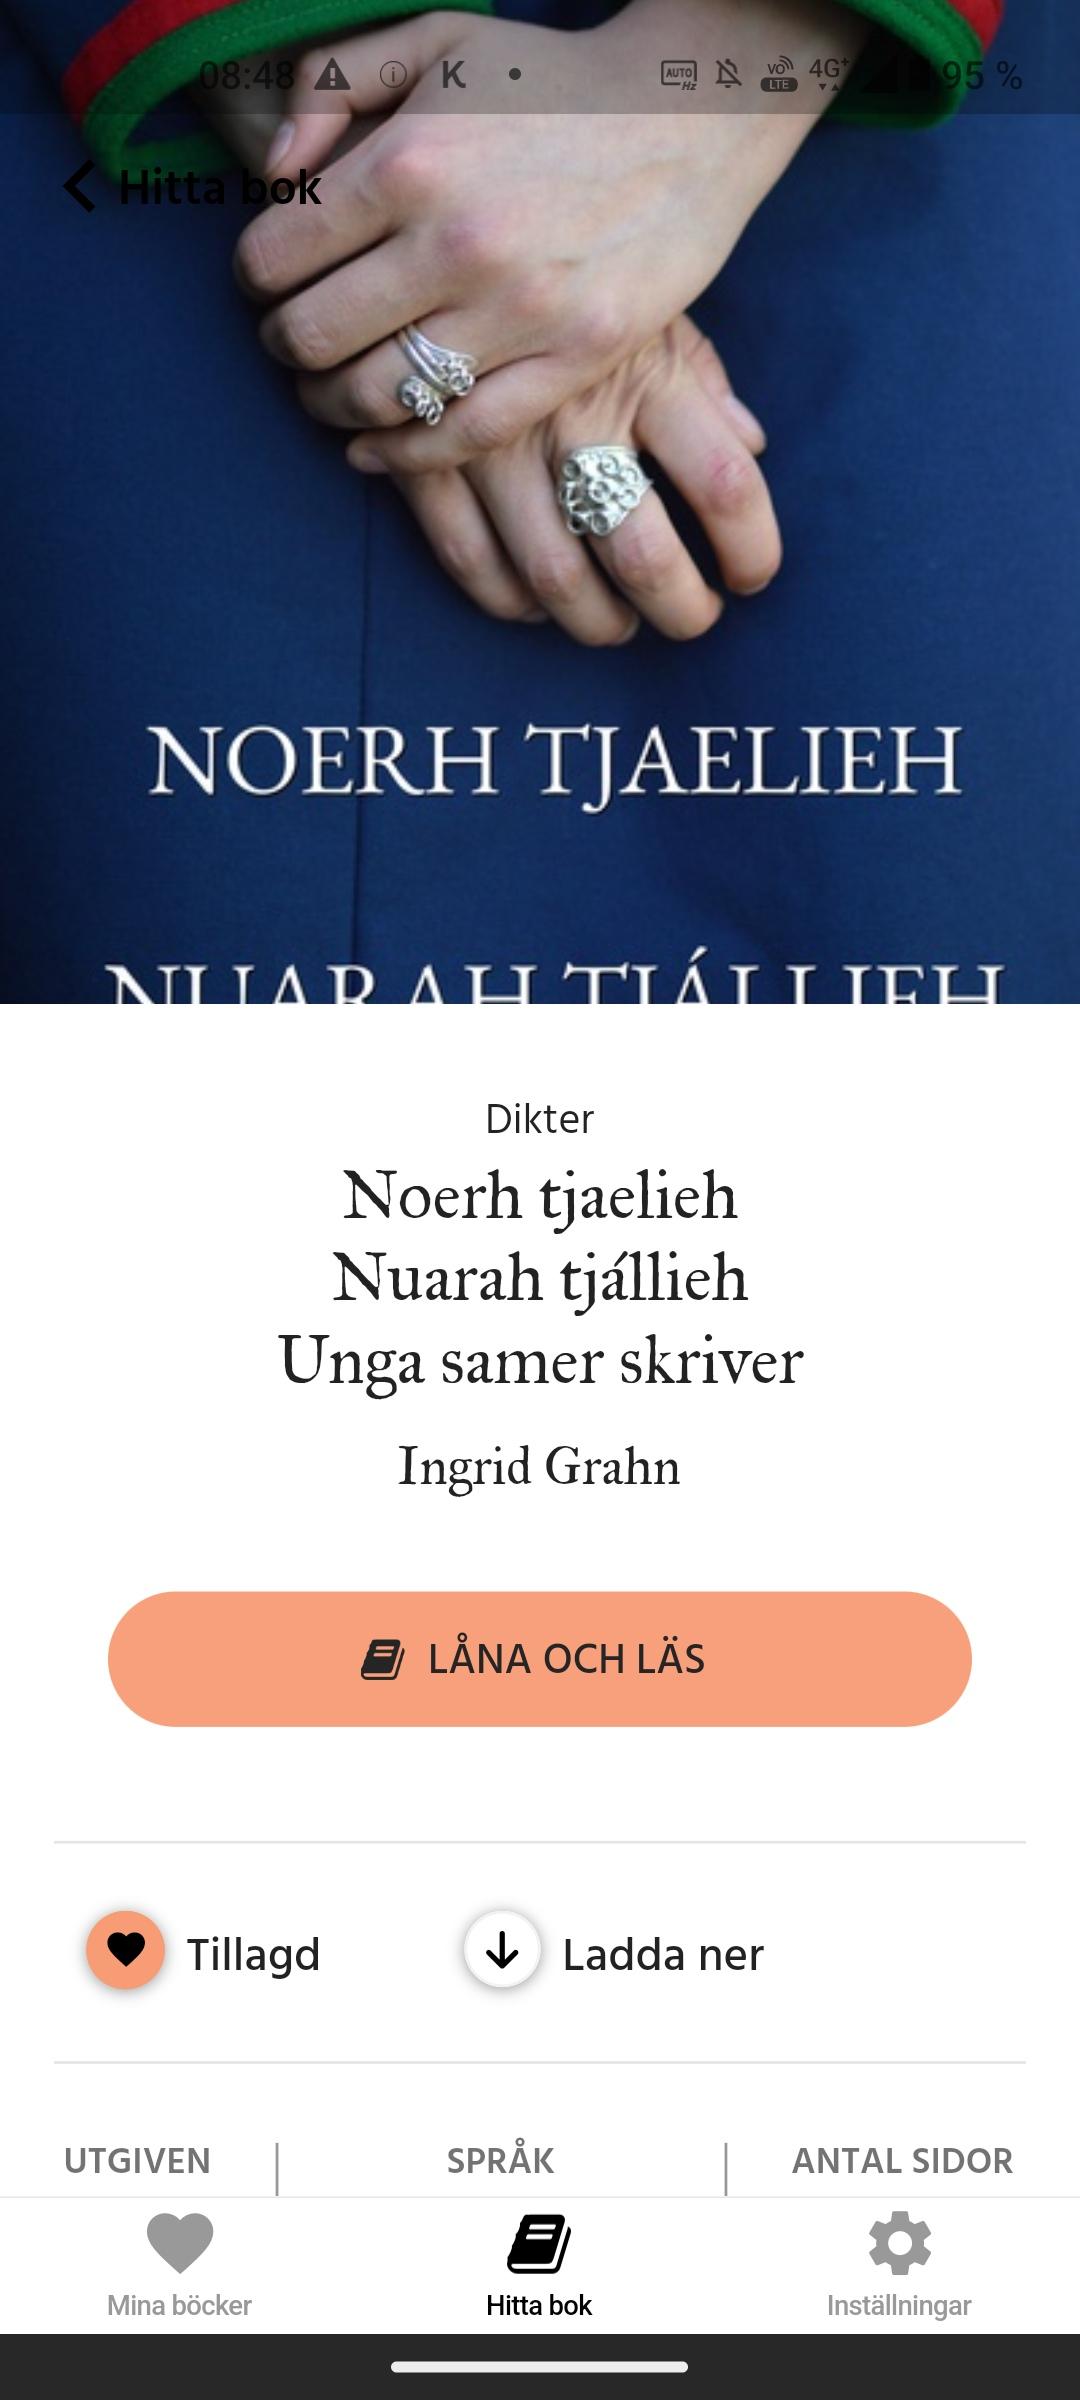 En vy från appen Bläddra med ett bokomslag och en knapp där det står "Låna och läs".